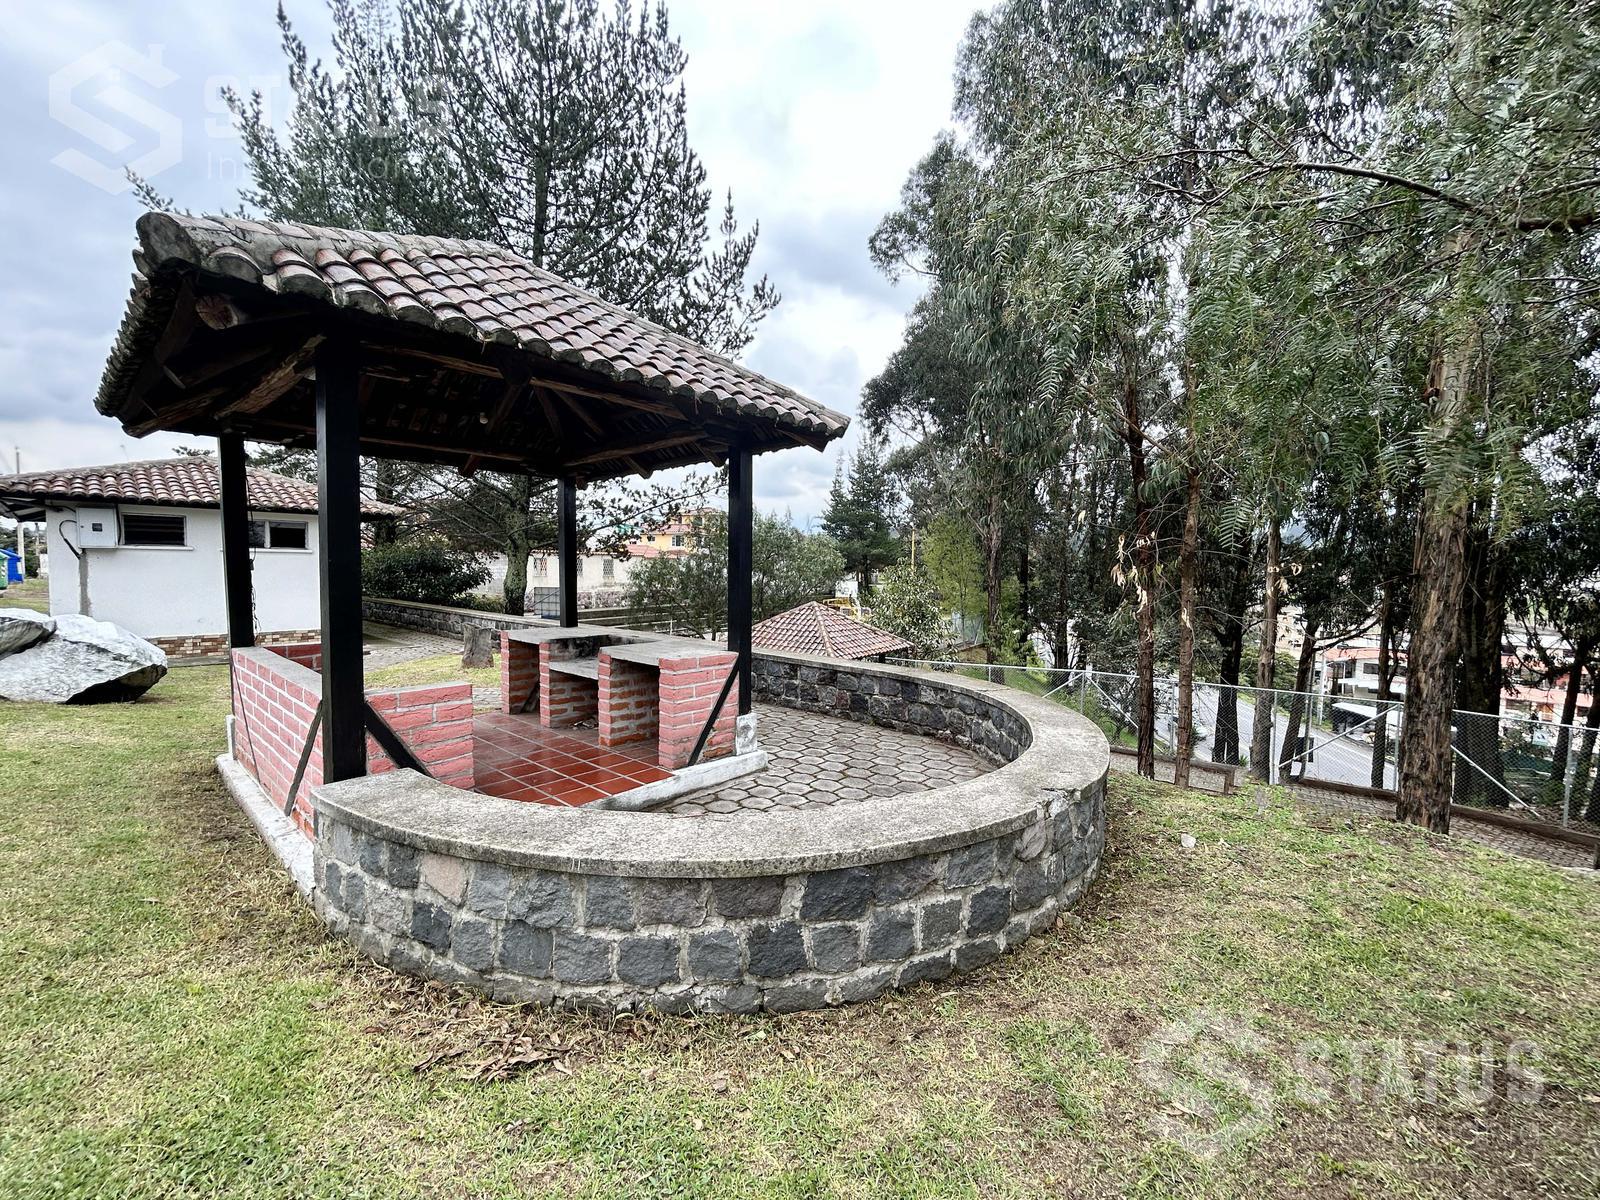 Vendo terreno de 491 m en urbanización, sector Sangolquí – Los Chillos, $70.000